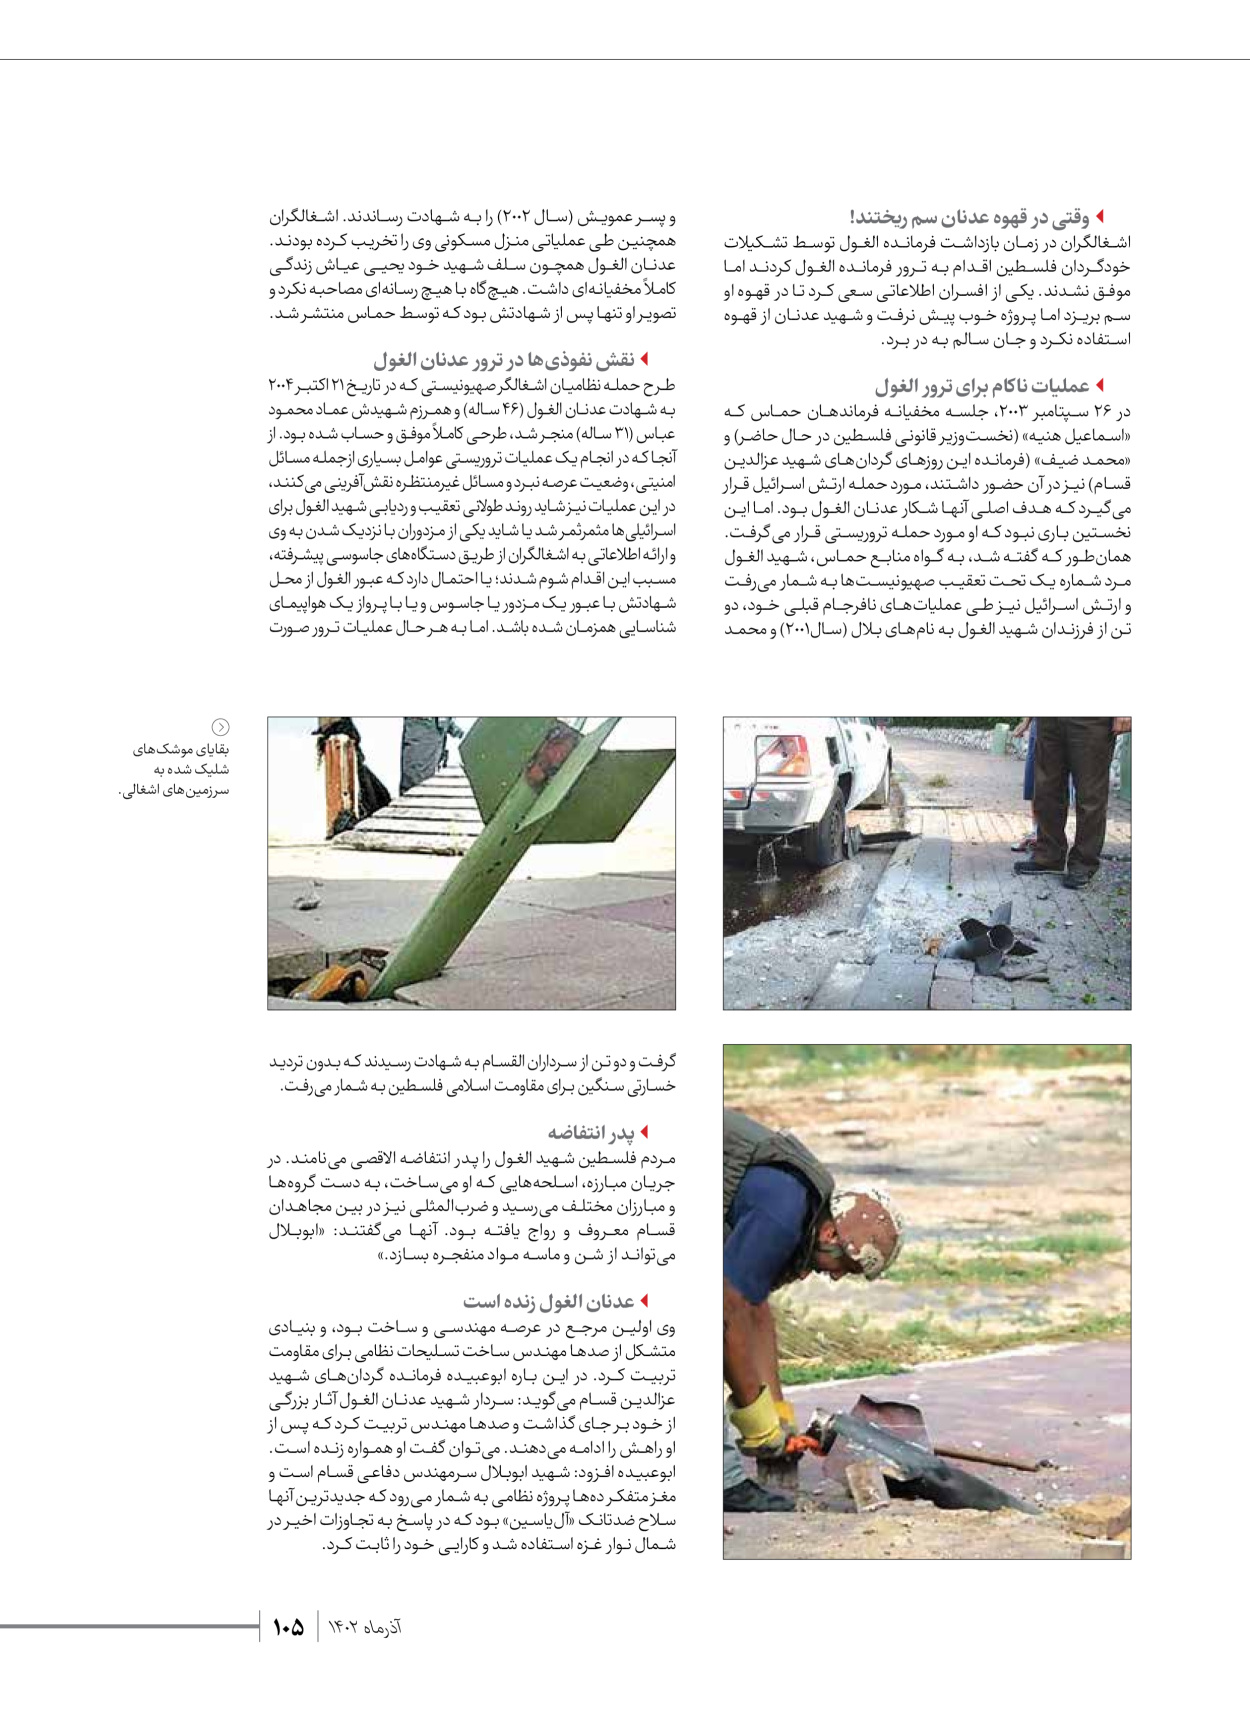 روزنامه ایران - ویژه نامه شهدای حماس - ۲۱ آذر ۱۴۰۲ - صفحه ۱۰۵